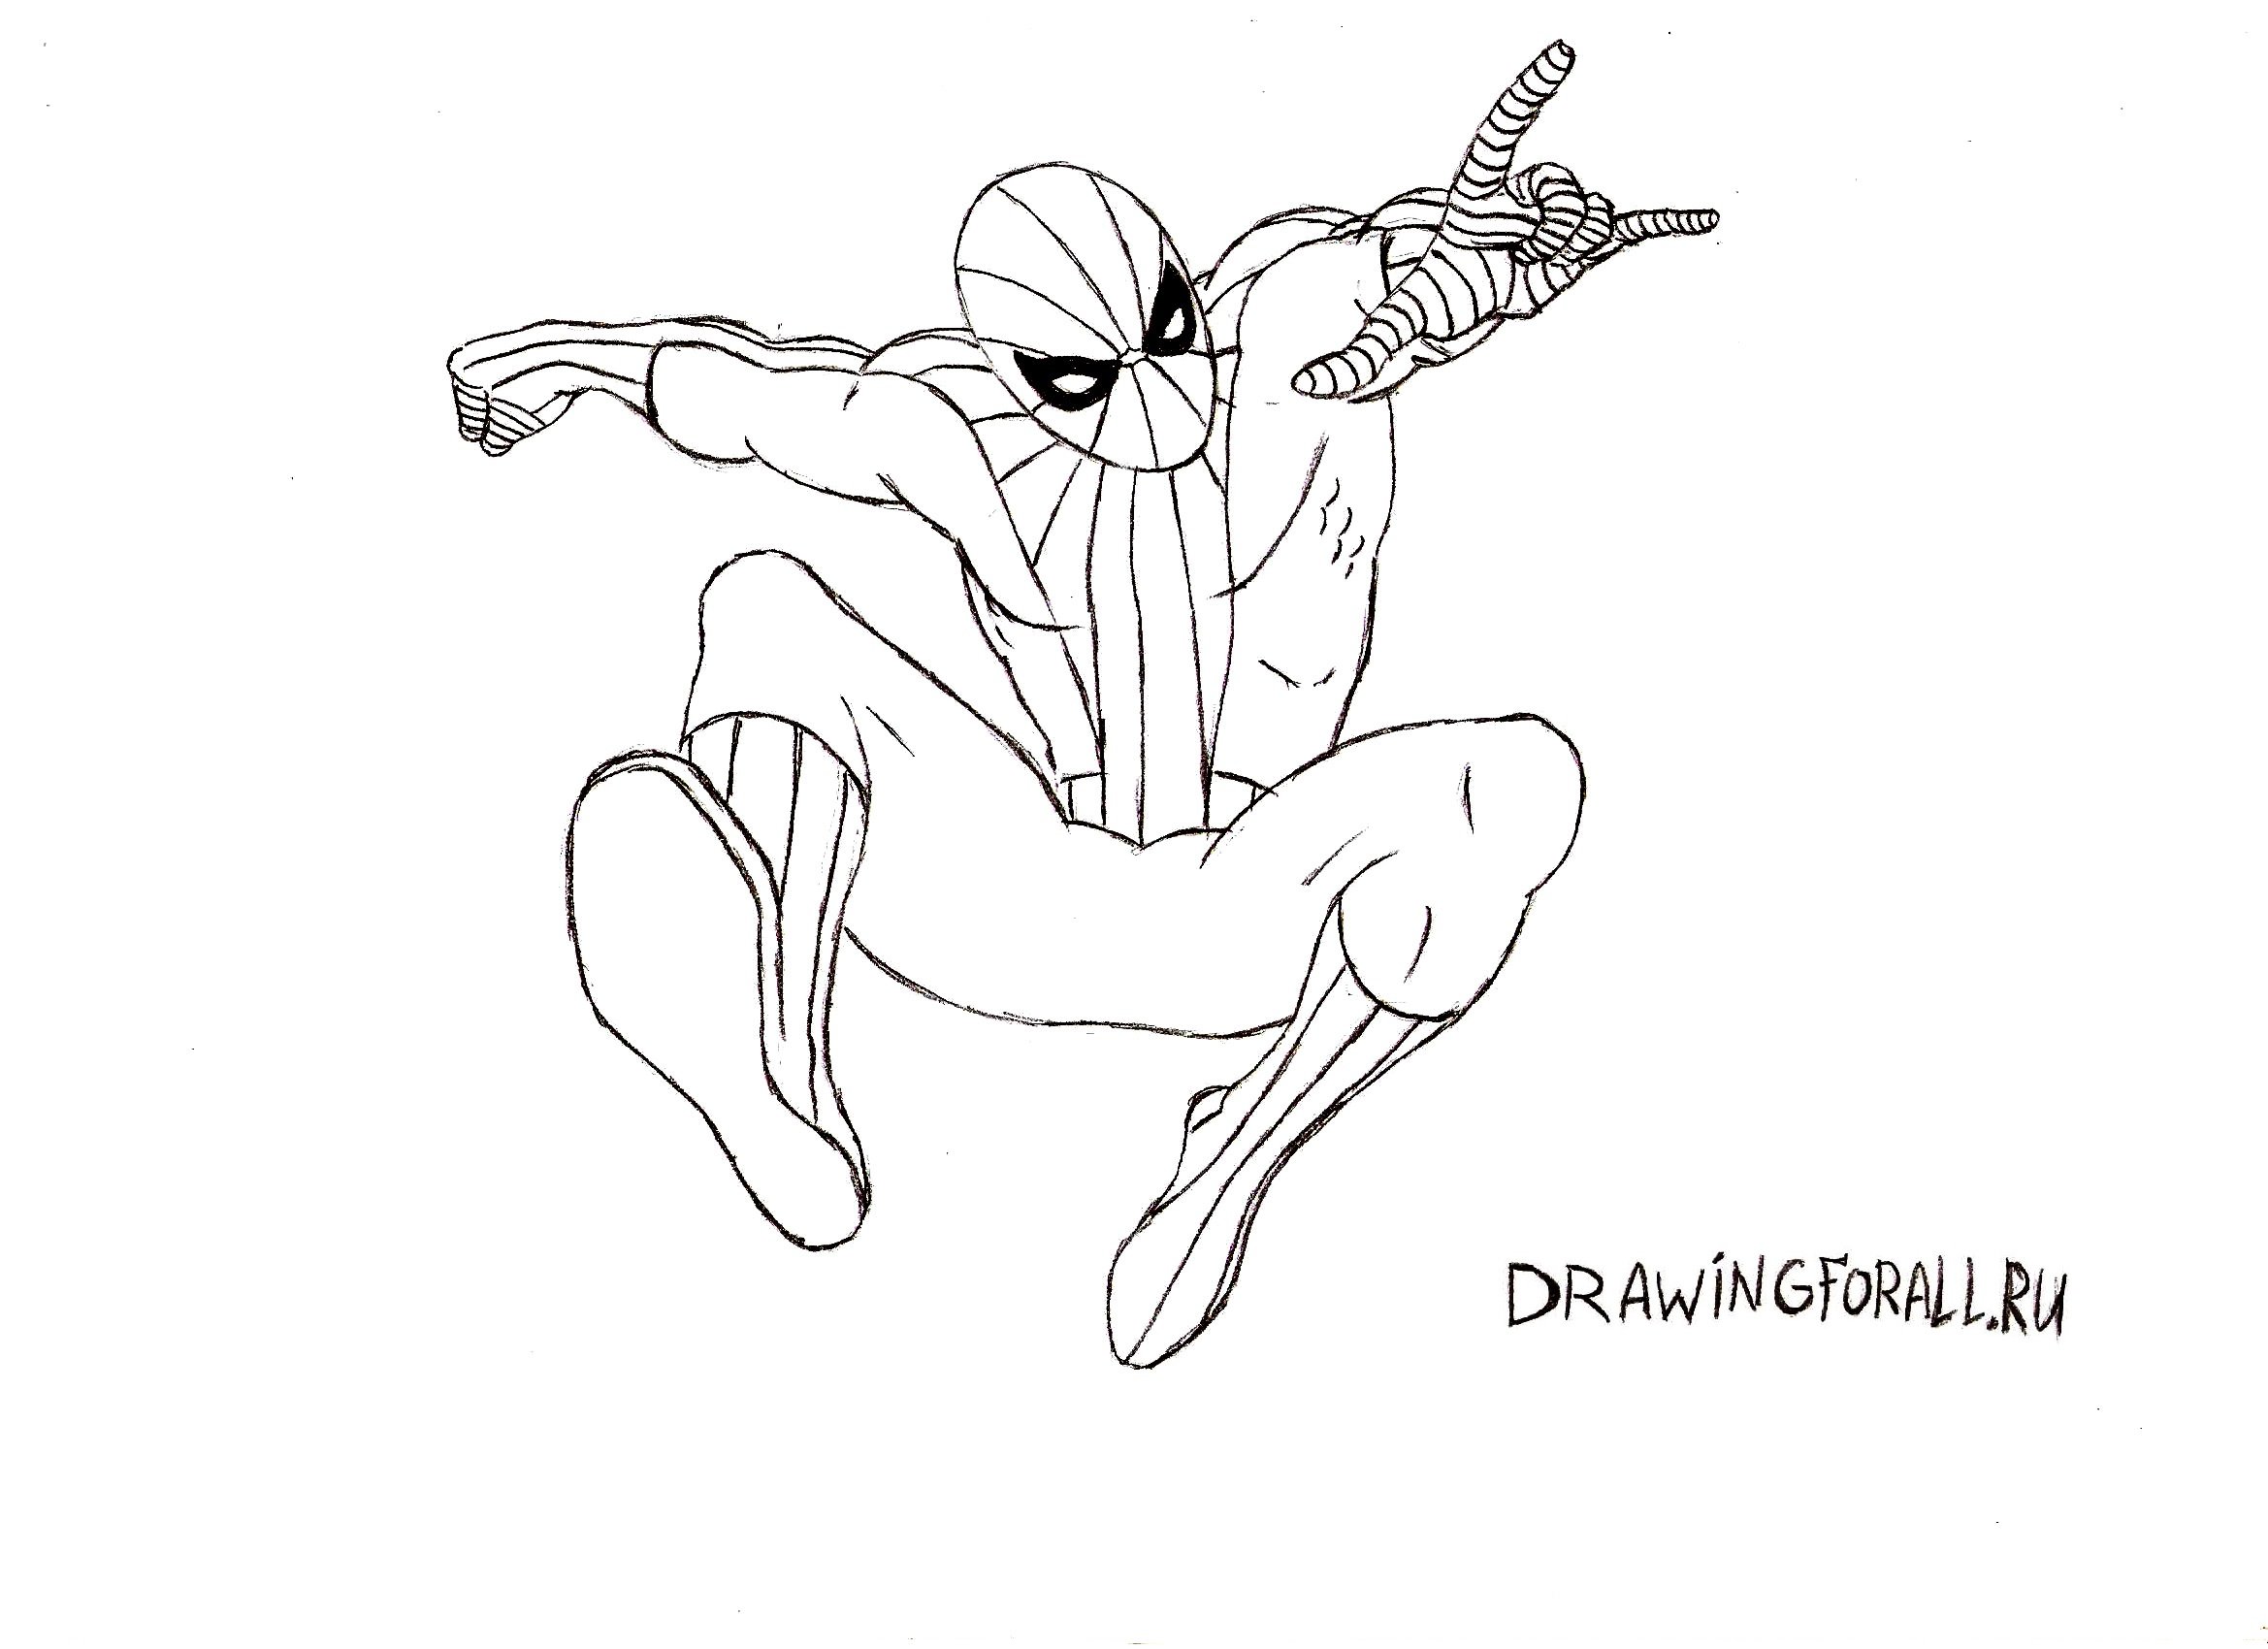 Нарисовать человека паука карандашом